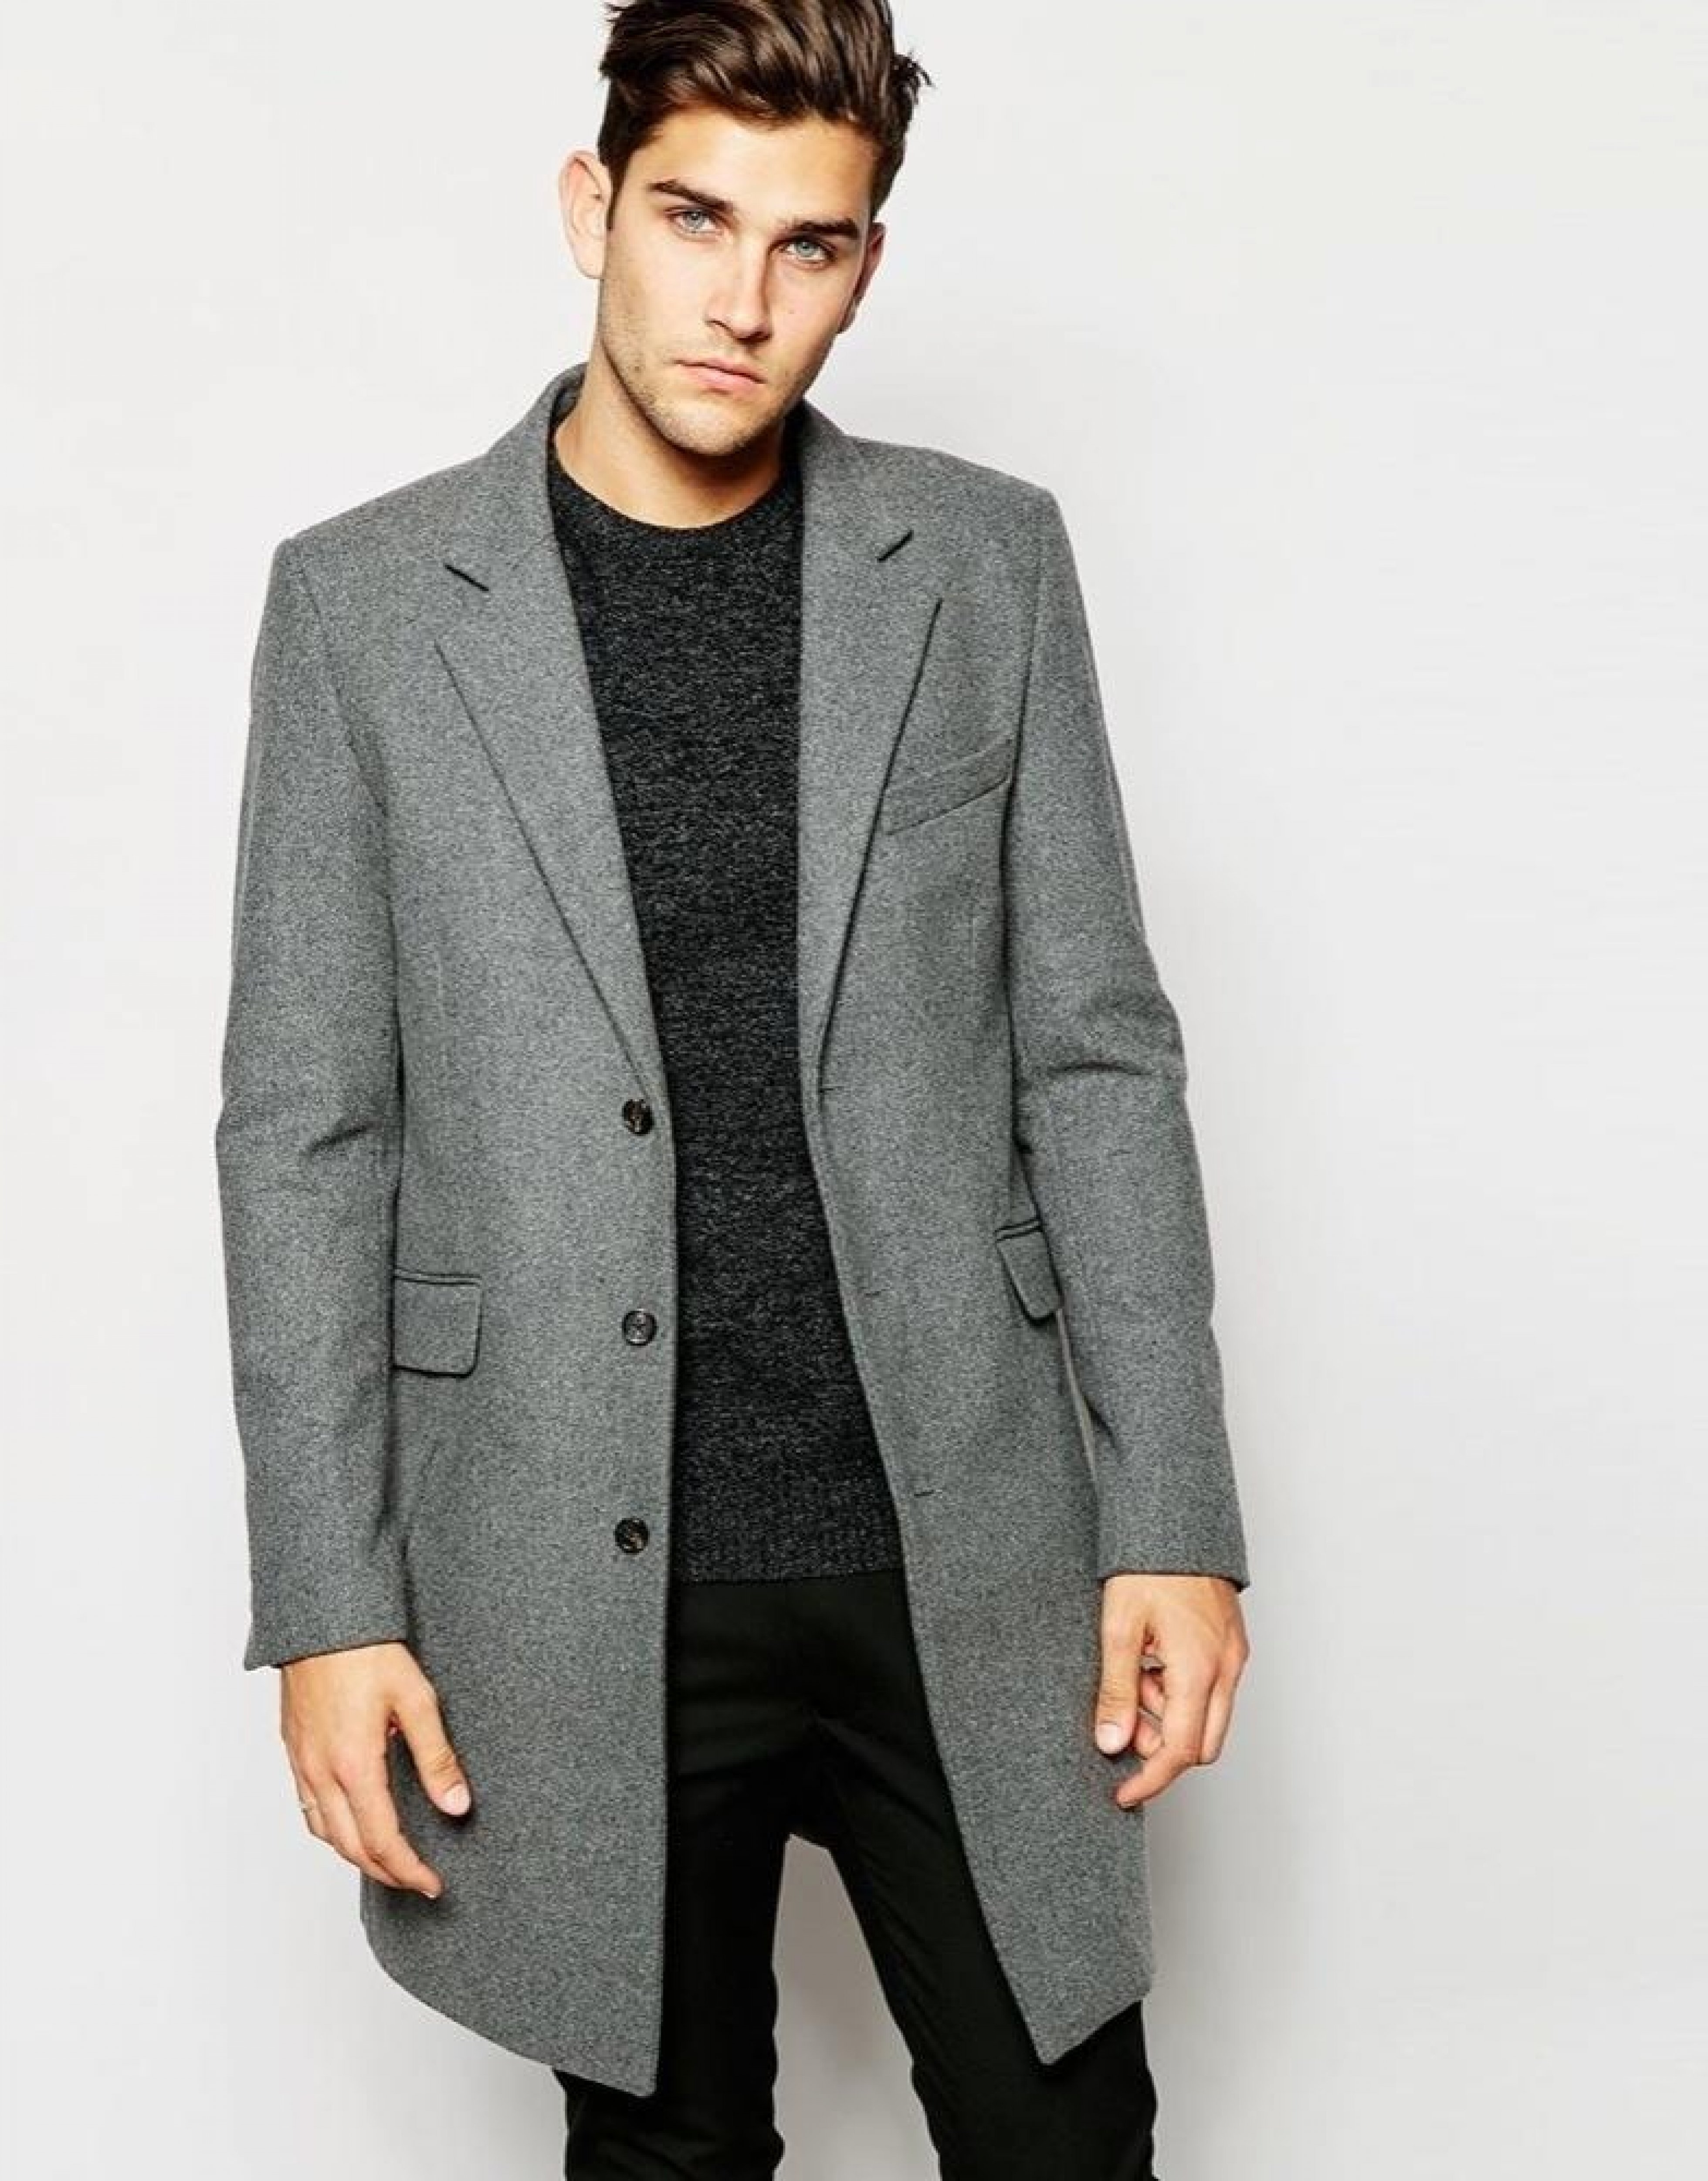 Пальто мужское светлое. Мужское пальто woolen Coat. Wool Blend Coat пальто мужское\. Пальто Bershka мужское серое. Пальто Асос мужское серое.